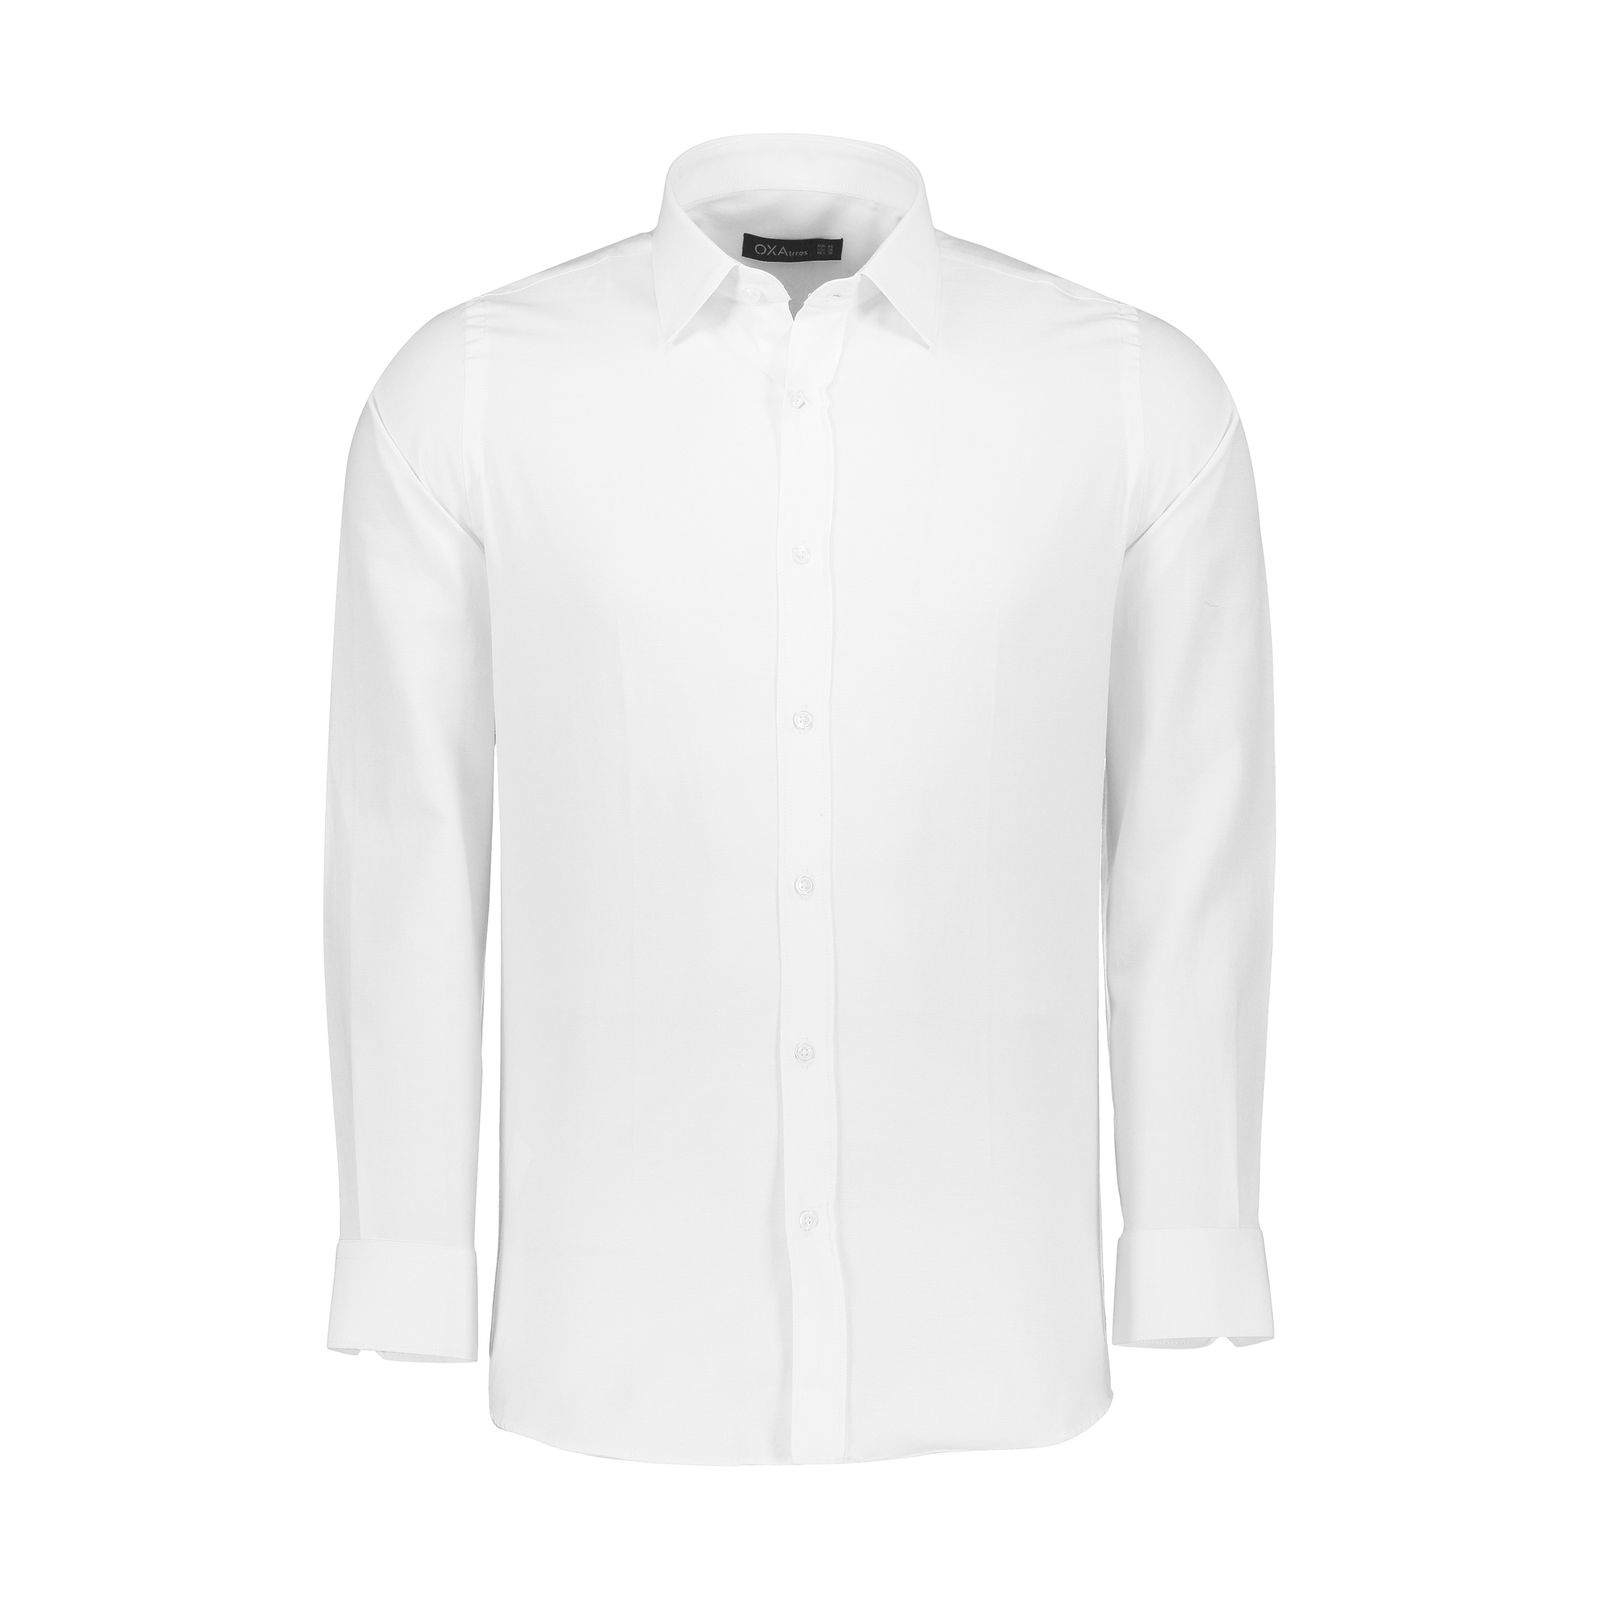 پیراهن مردانه اکزاترس مدل I012001001360001-001 -  - 1